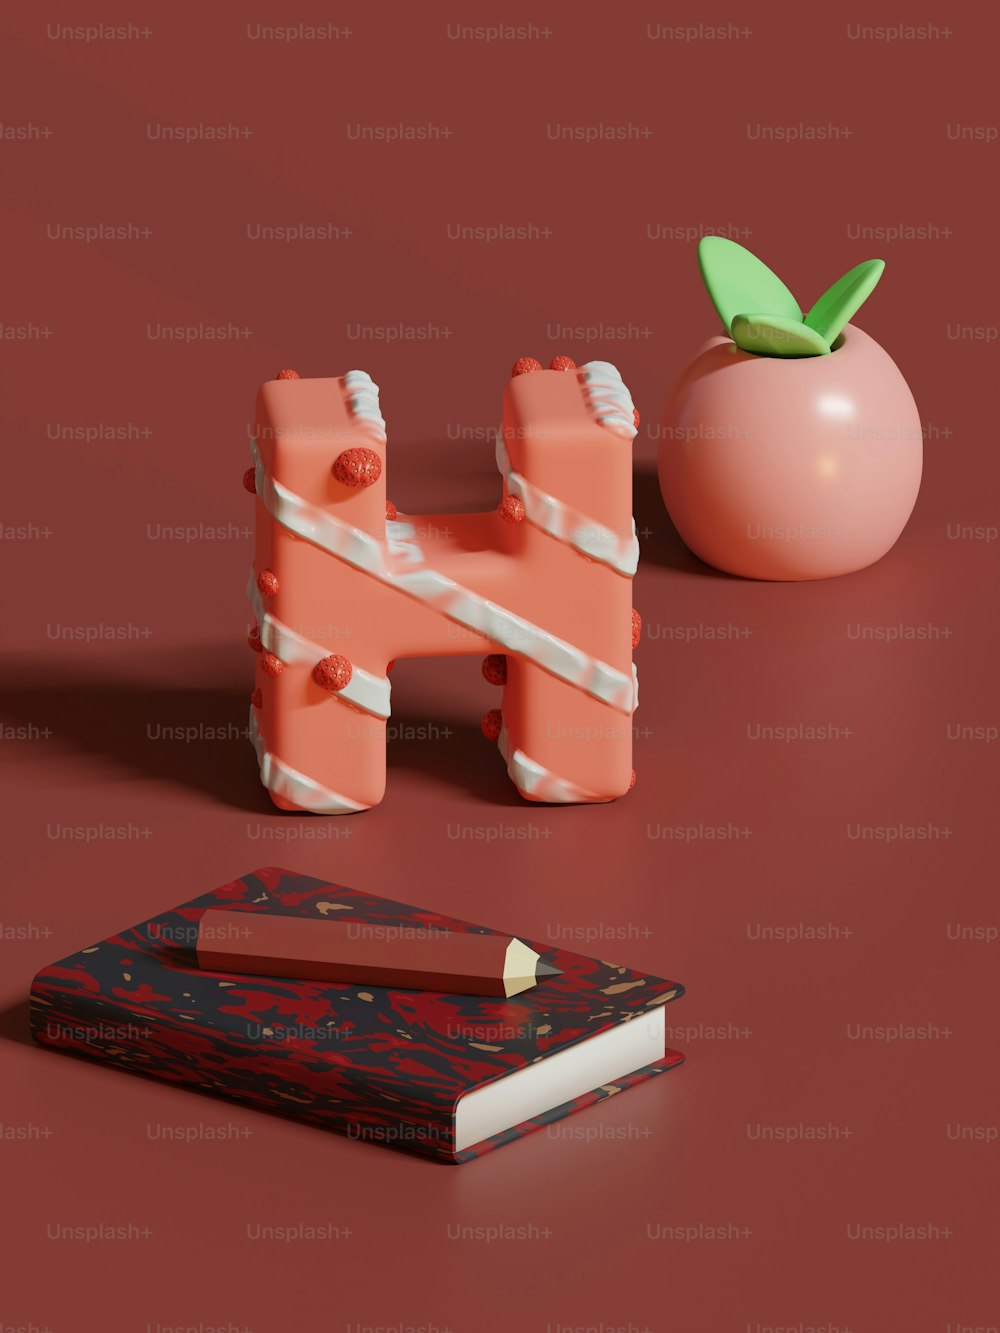 Un objeto rosa sentado encima de una mesa junto a un libro